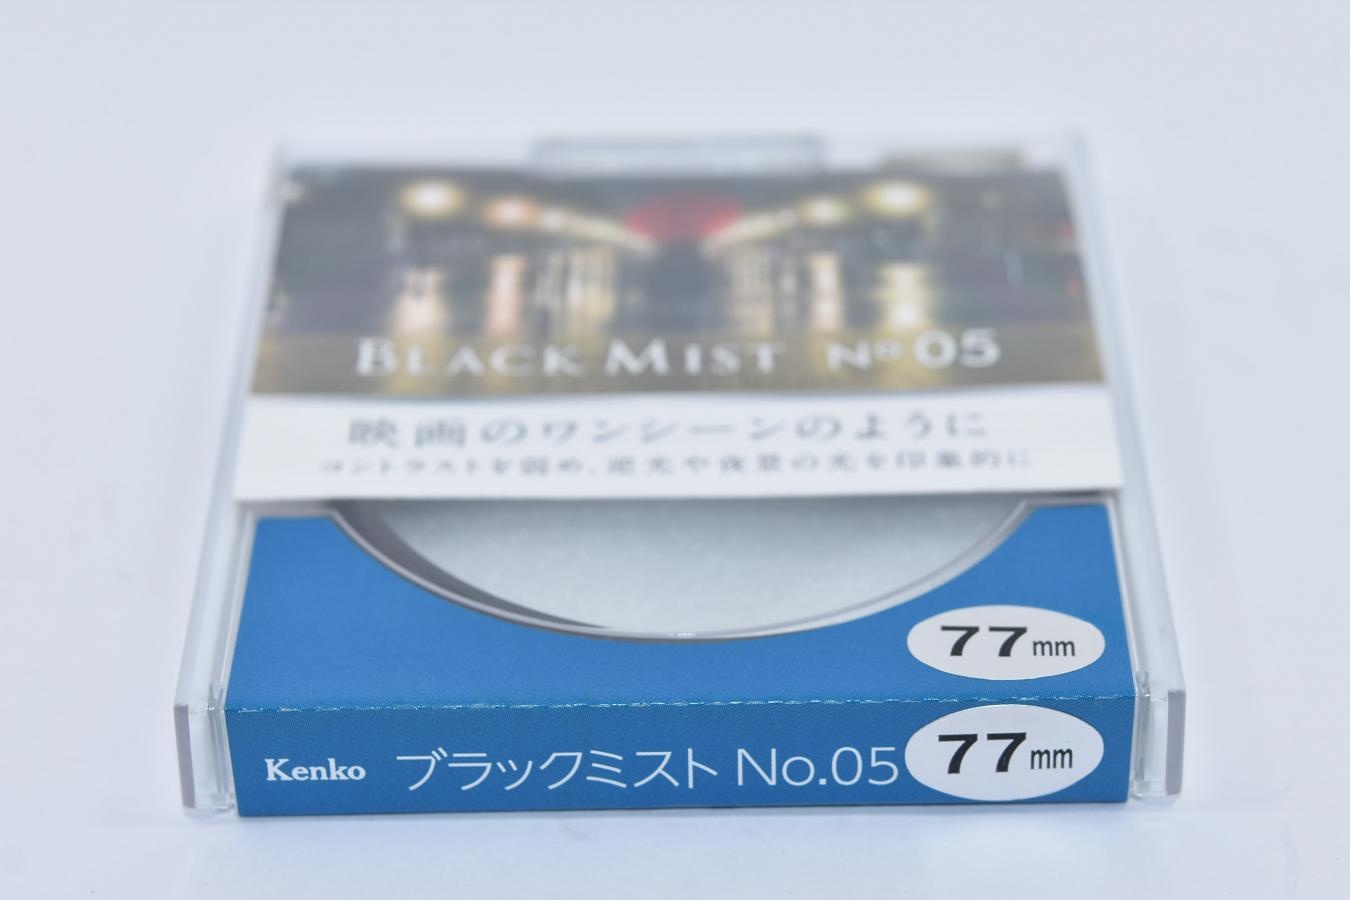 【新品未使用】Kenko BLACK MIST No5 77mm【コントラストを弱め、逆光や夜景の光を印象的に 映画のワンシーンのように/SNS等で話題沸騰/次回入荷未定】